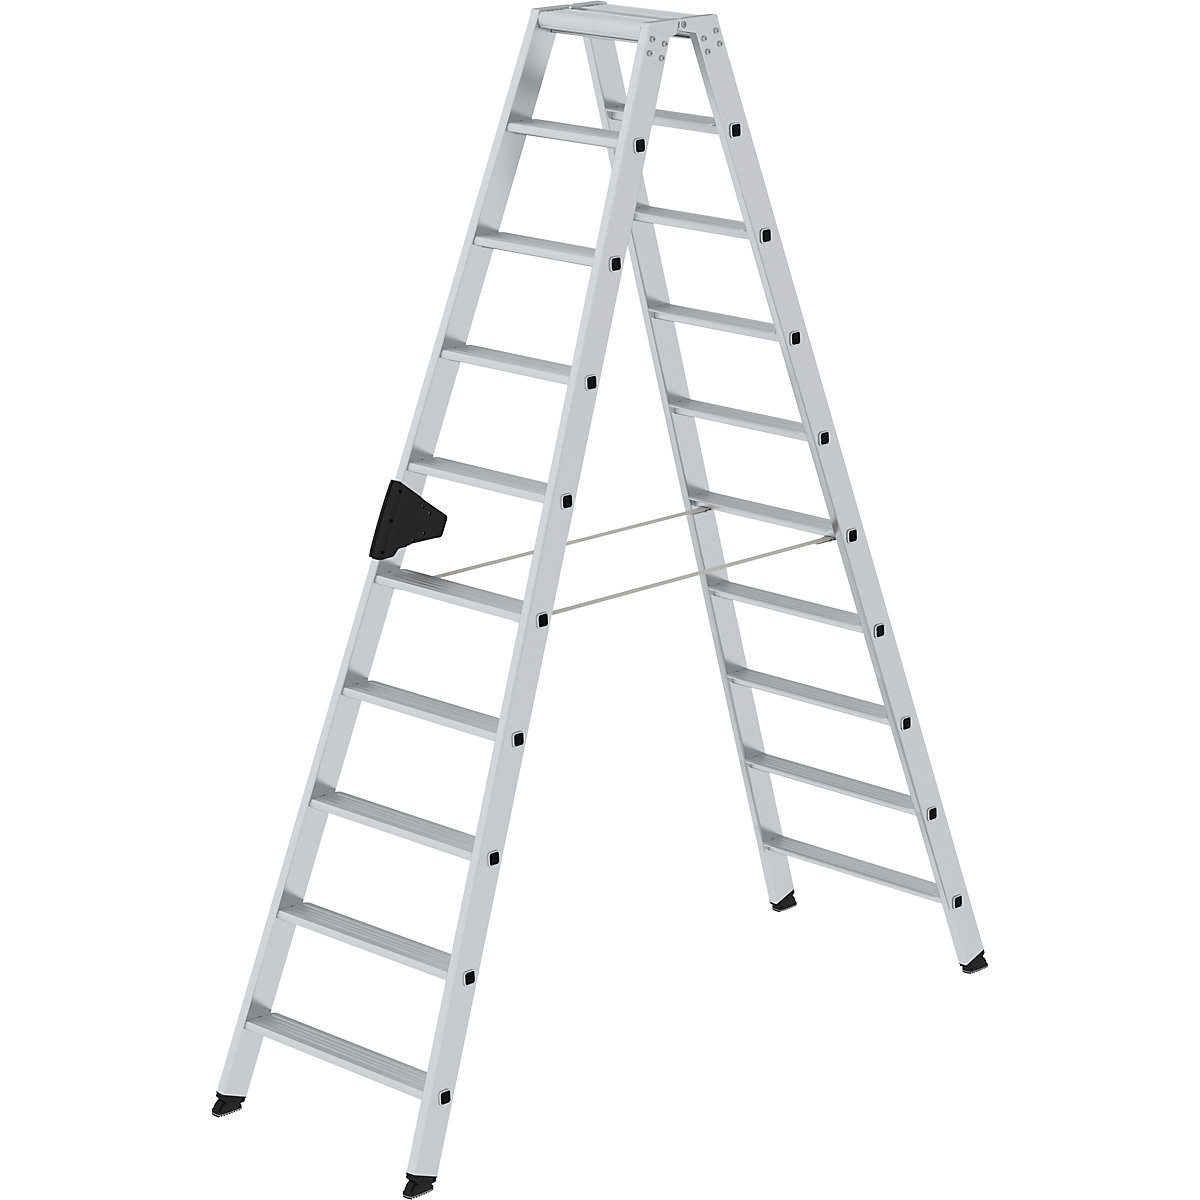 Escalera tipo tijera de peldaños planos, ascenso por ambos lados – MUNK, modelo extra cómodo con ergo-pad®, 2x10 escalones-14